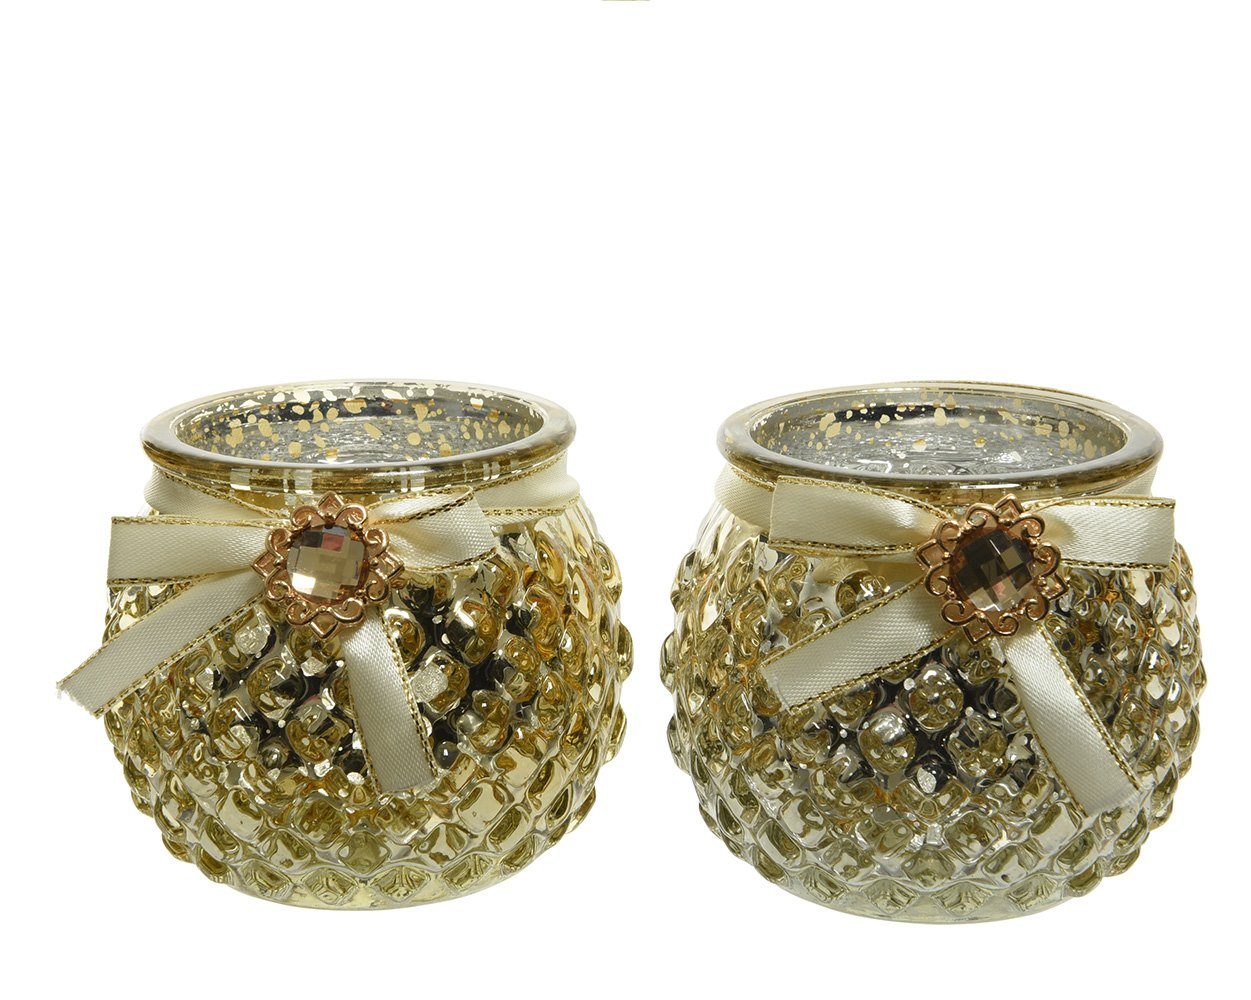 Decoris season decorations Teelichthalter, Teelichthalter Glas mit Schleife / Strass 7cm hellgold, 1 Stück sort. | Teelichthalter